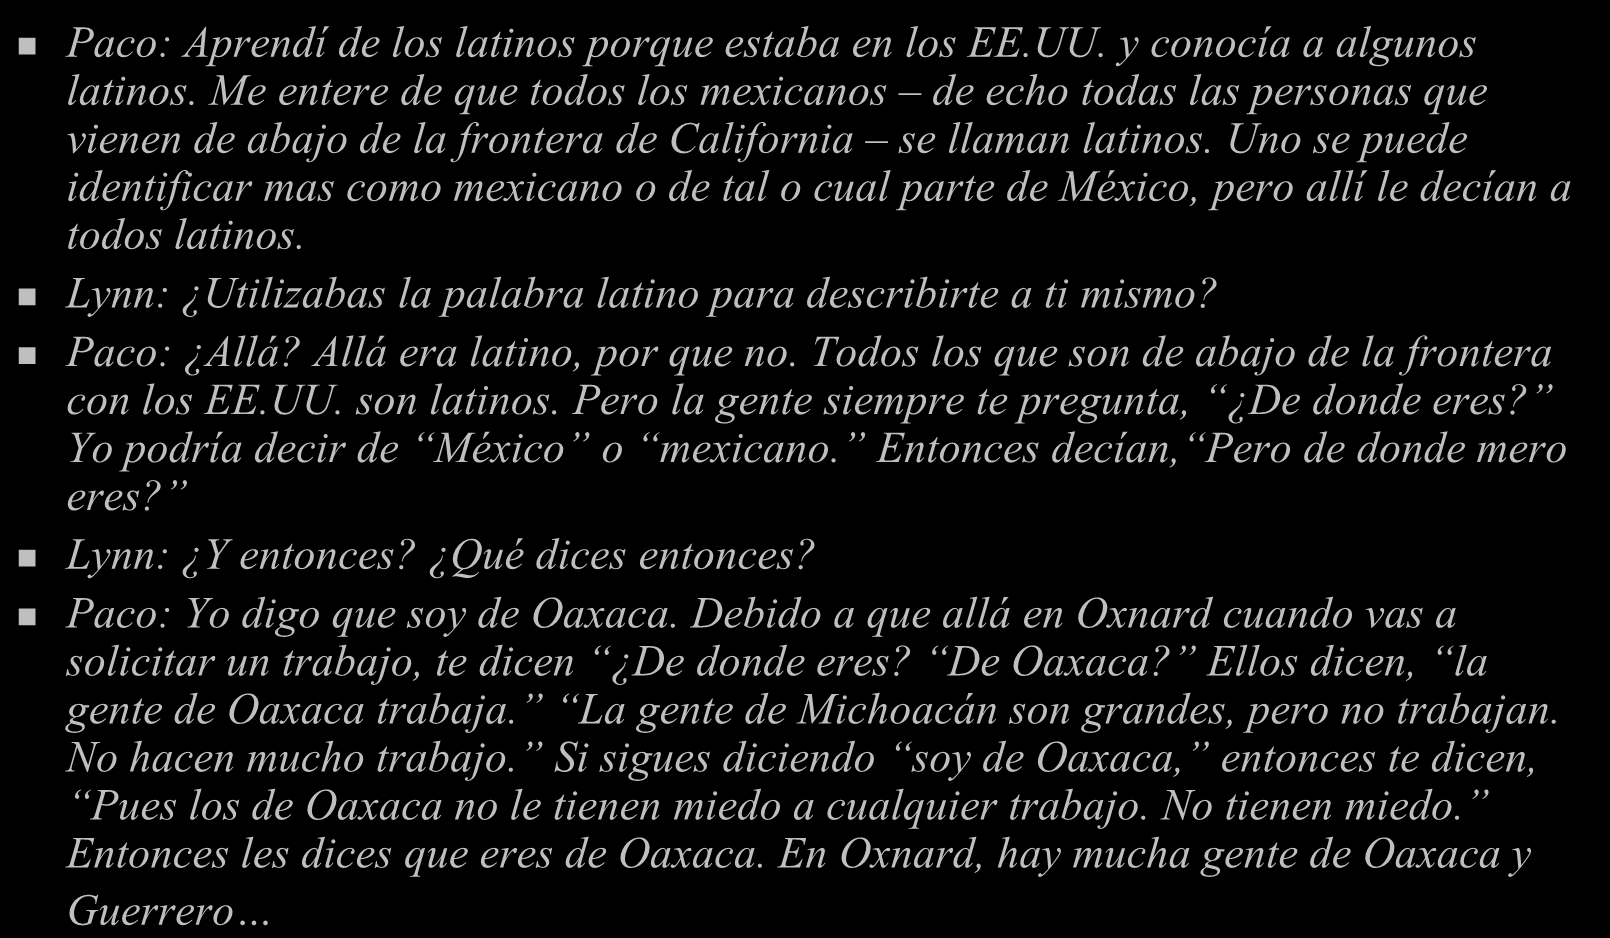 Paco: Aprendí de los latinos porque estaba en los EE.UU. y conocía a algunos latinos.